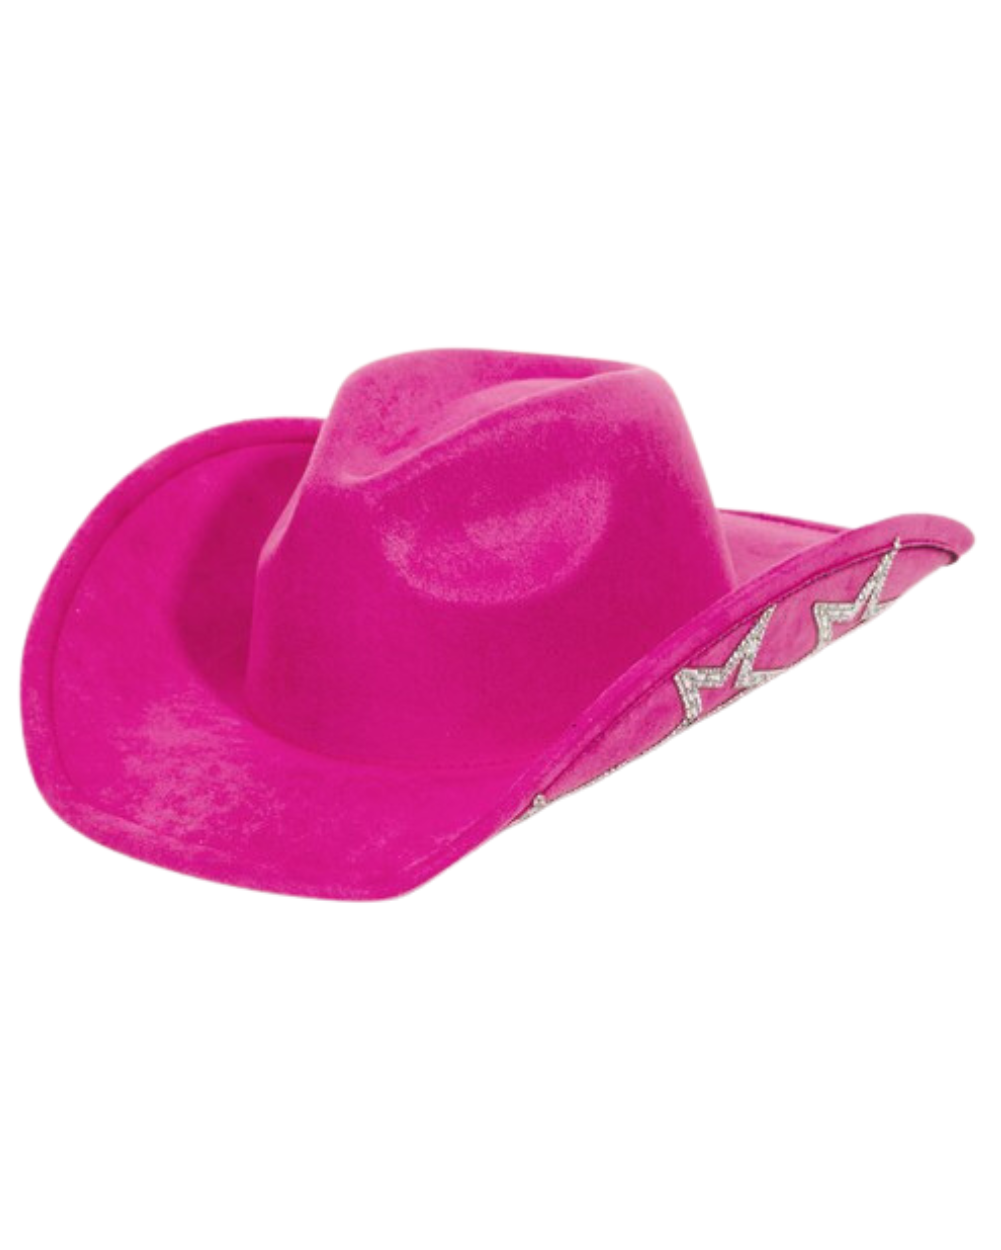 Star Girl - Fuchsia Cowboy Hat With Silver Stars - Lunautics Cowboy Hat